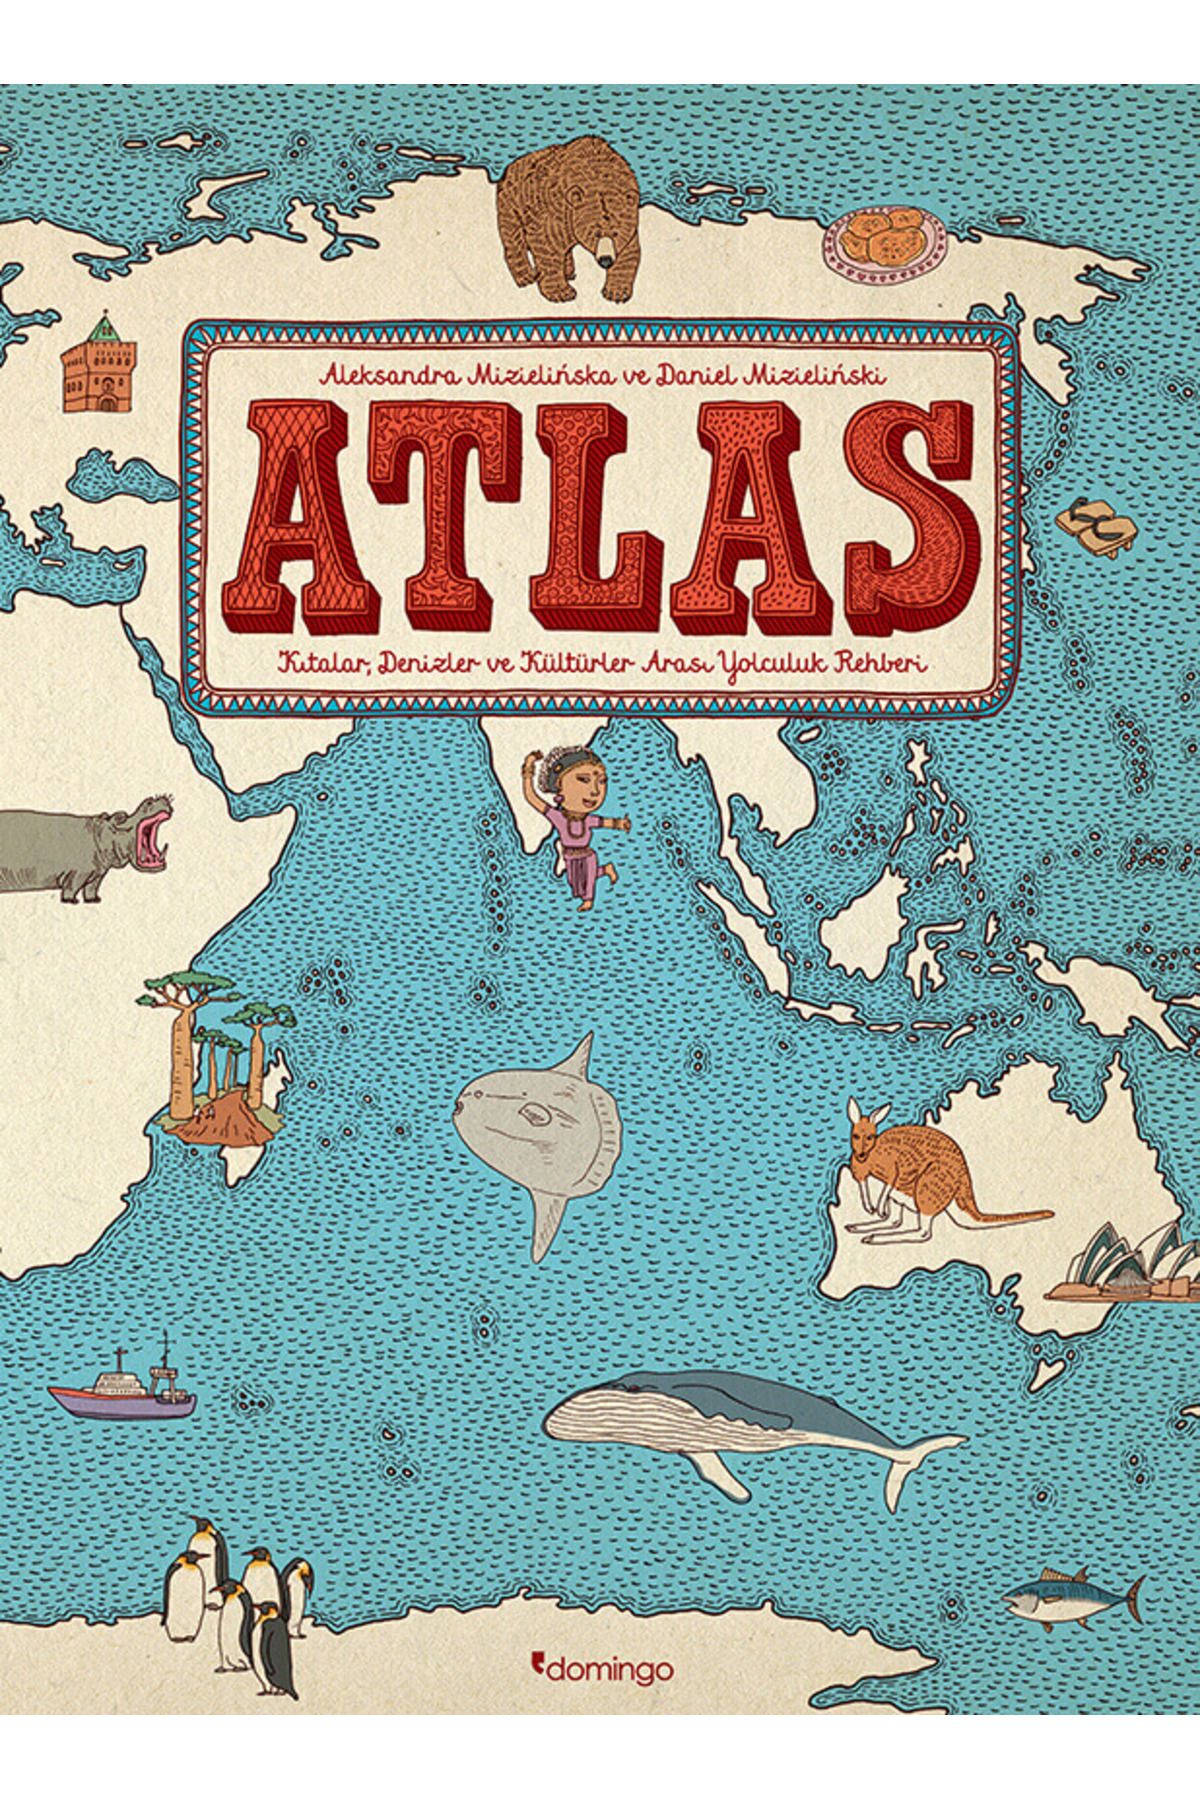 Атлас издательства Domingo - Путеводитель по континентам, морям и культурам 520530